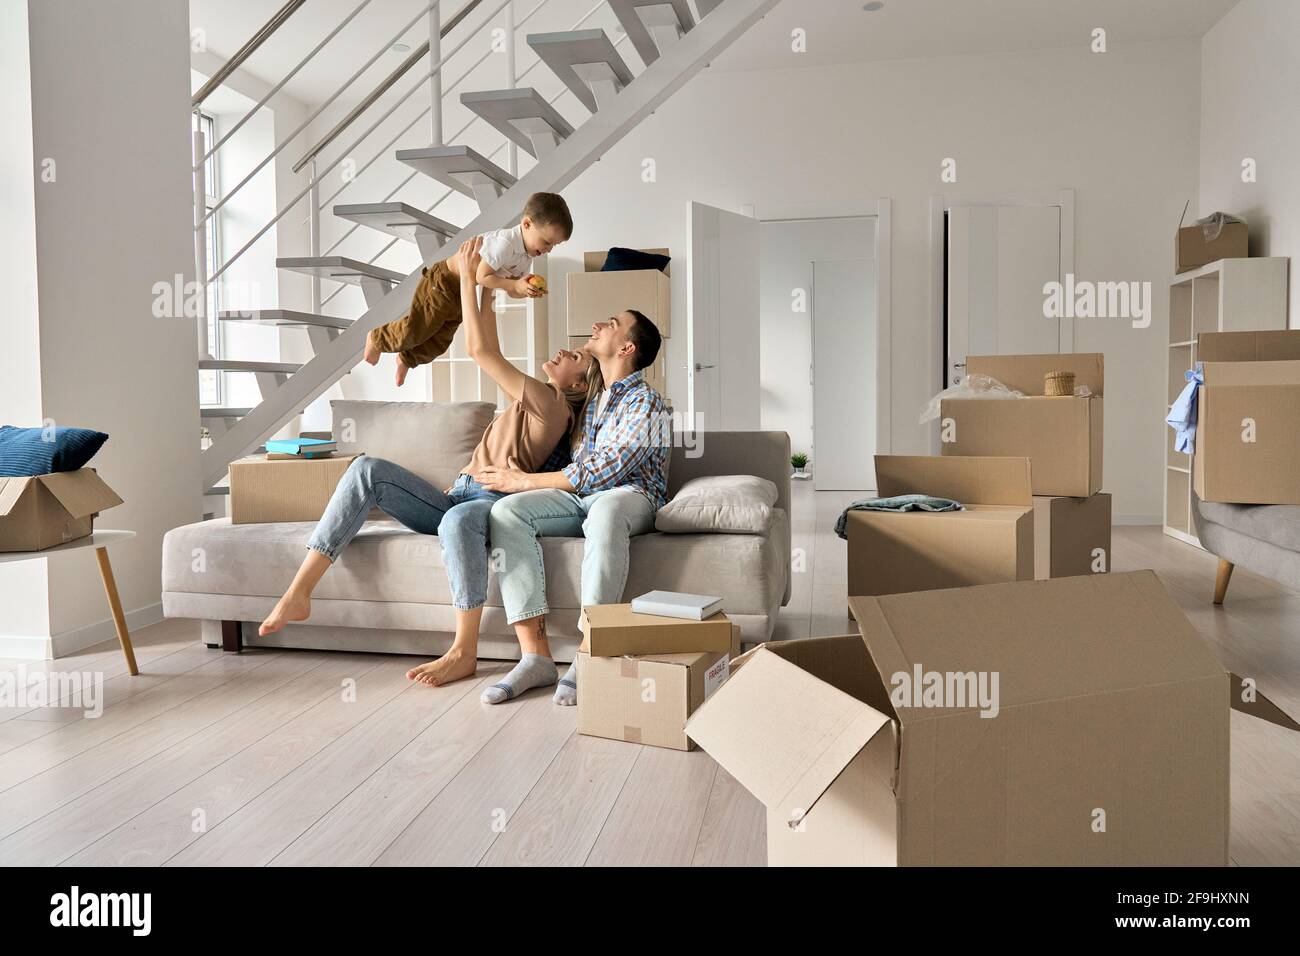 Une jeune famille heureuse jouant avec son enfant dans une nouvelle maison le jour de la journée. Banque D'Images